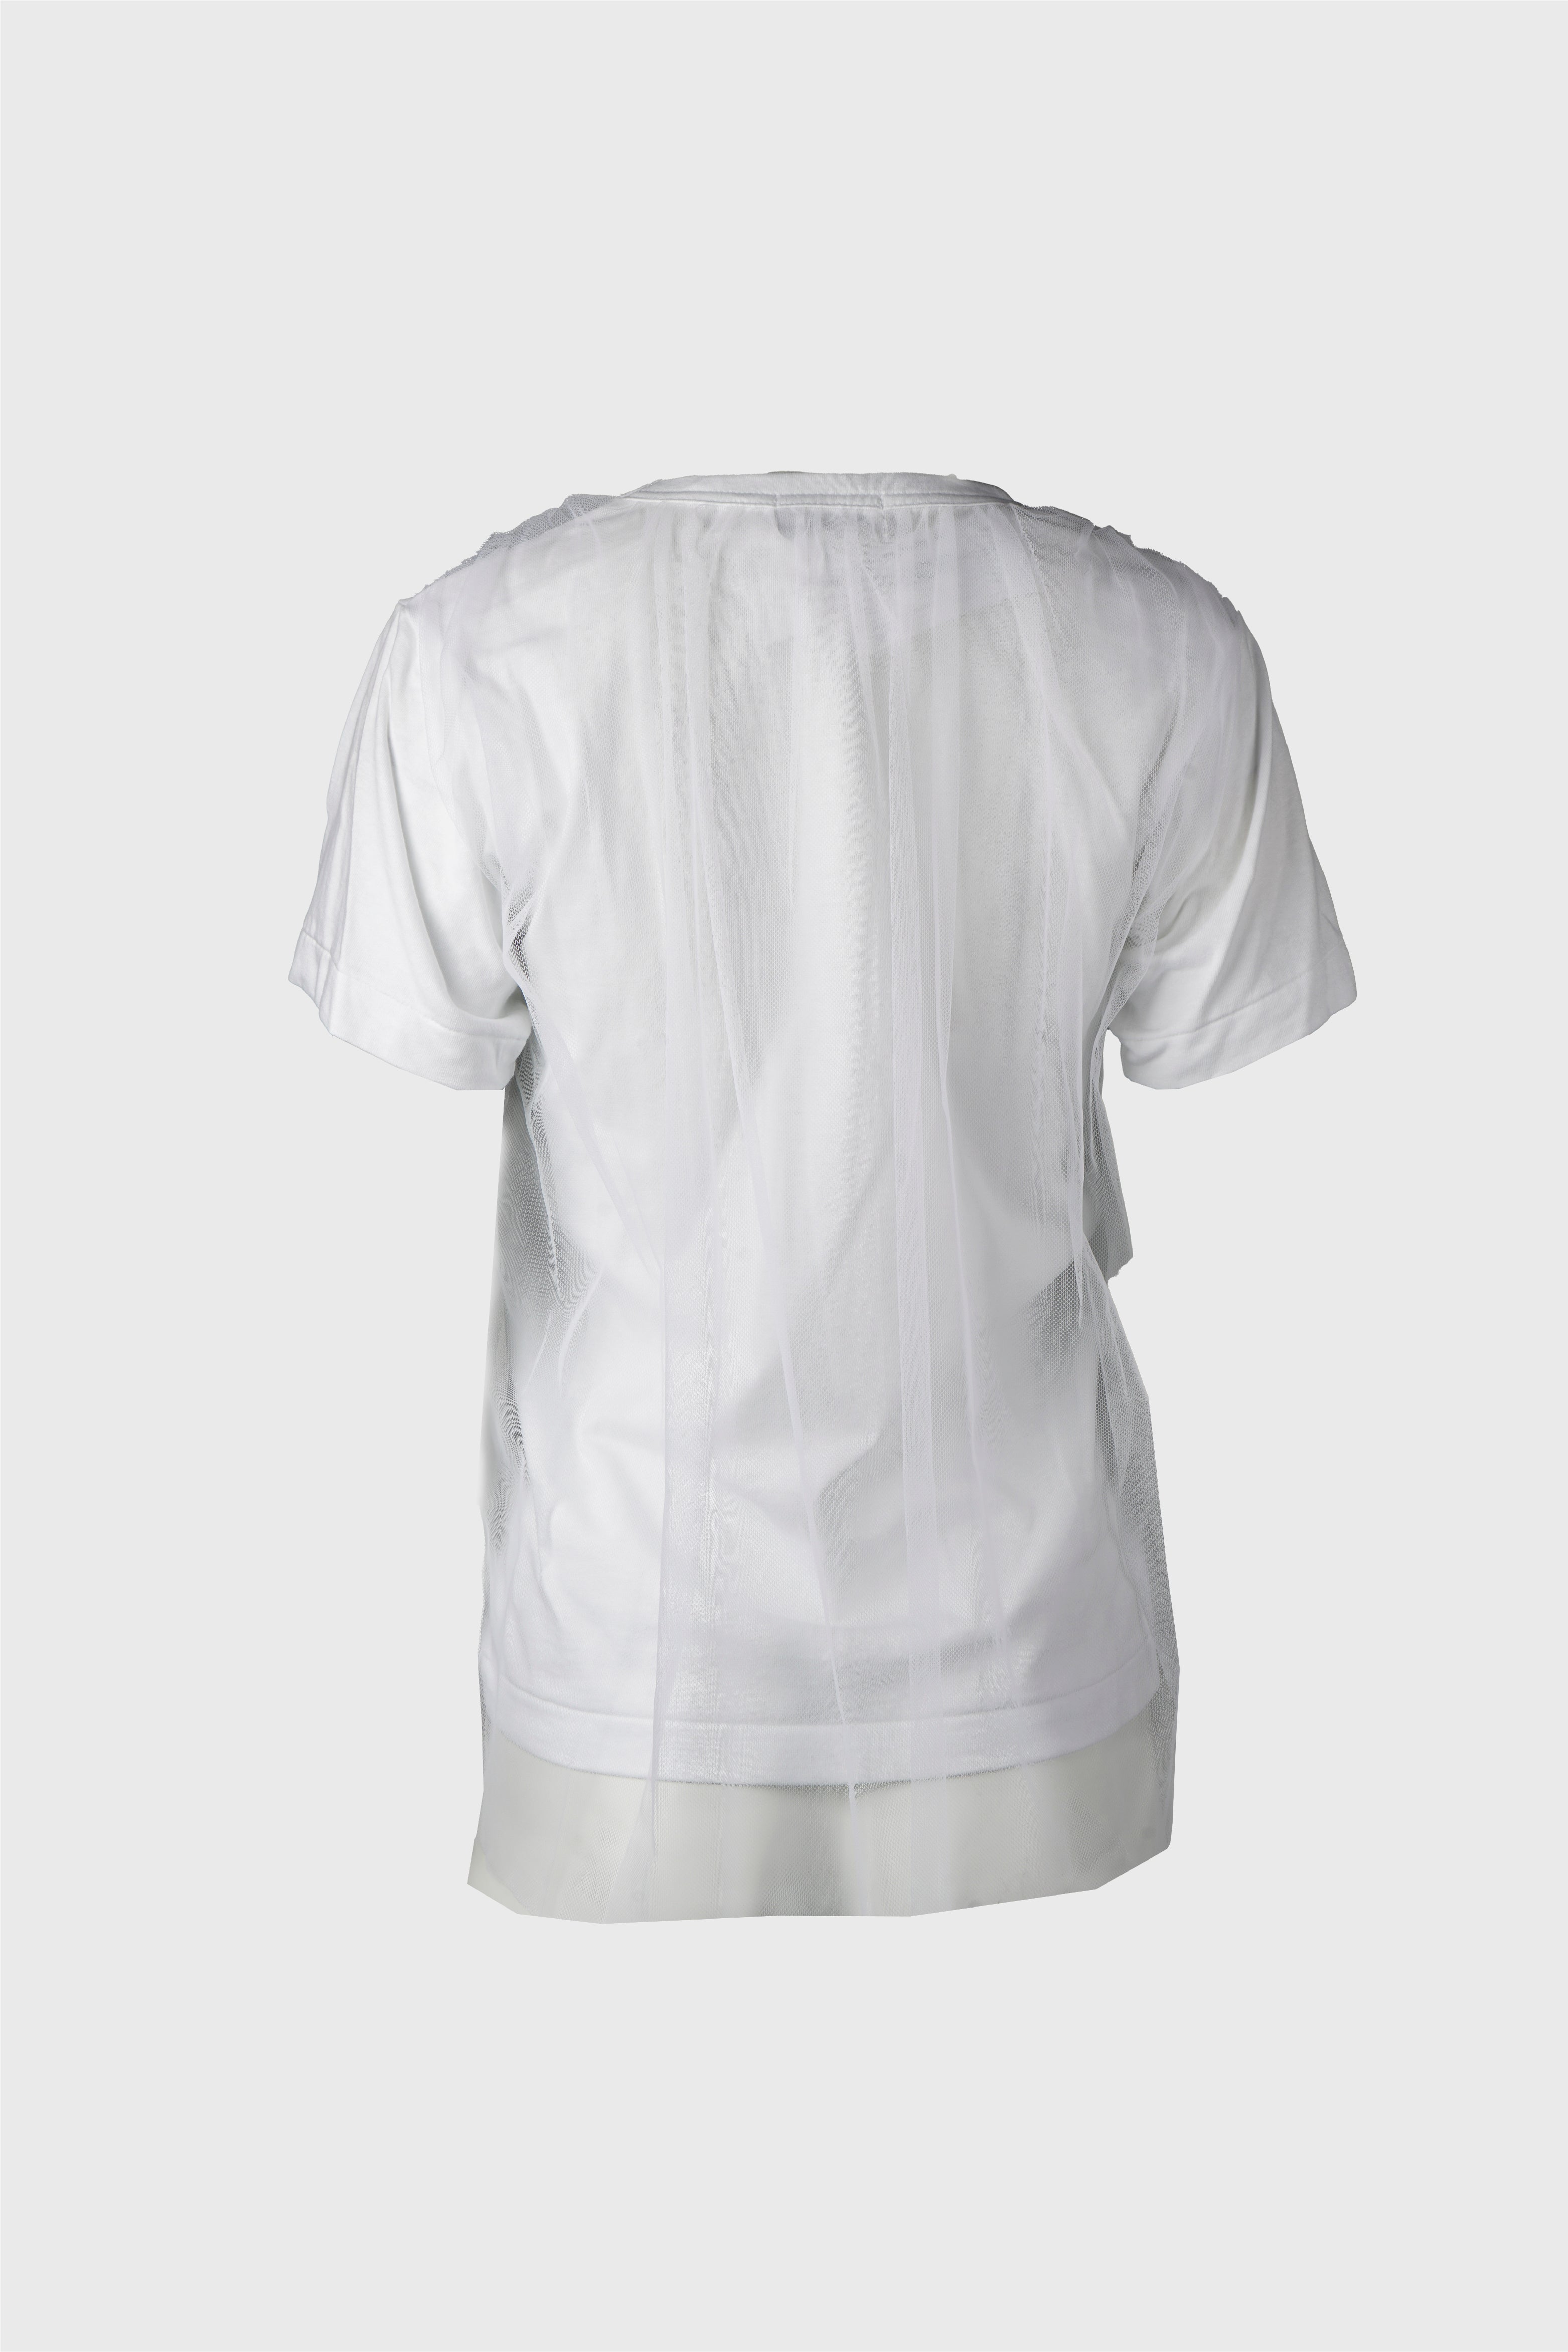 Selectshop FRAME - COMME DES GARÇONS GIRL T-Shirt T-Shirts Dubai